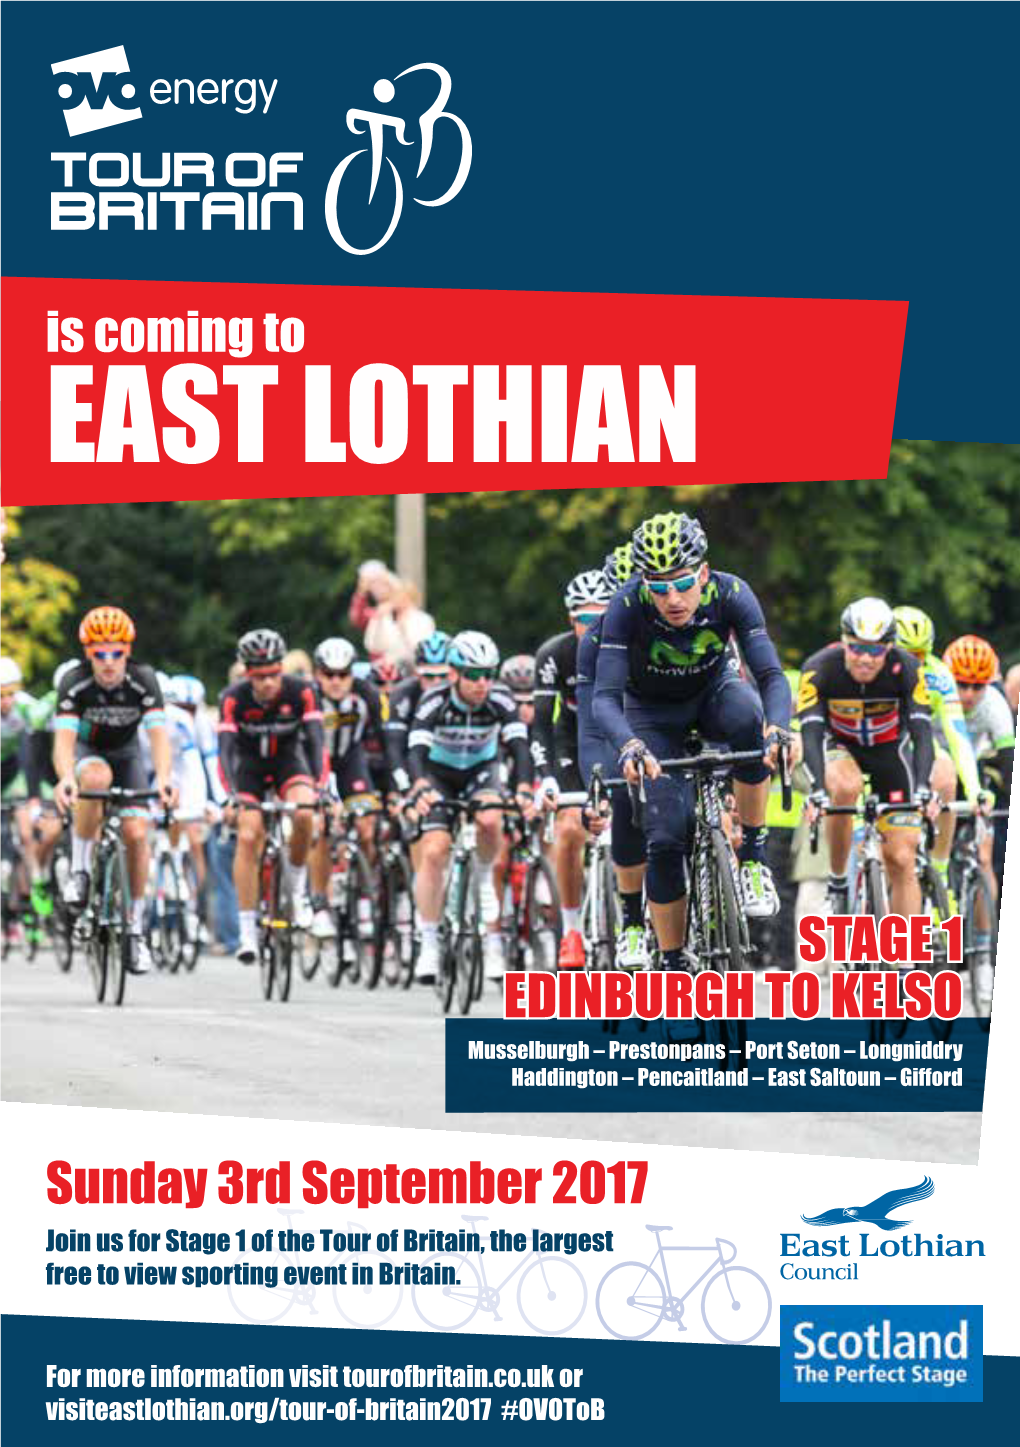 Visit East Lothian